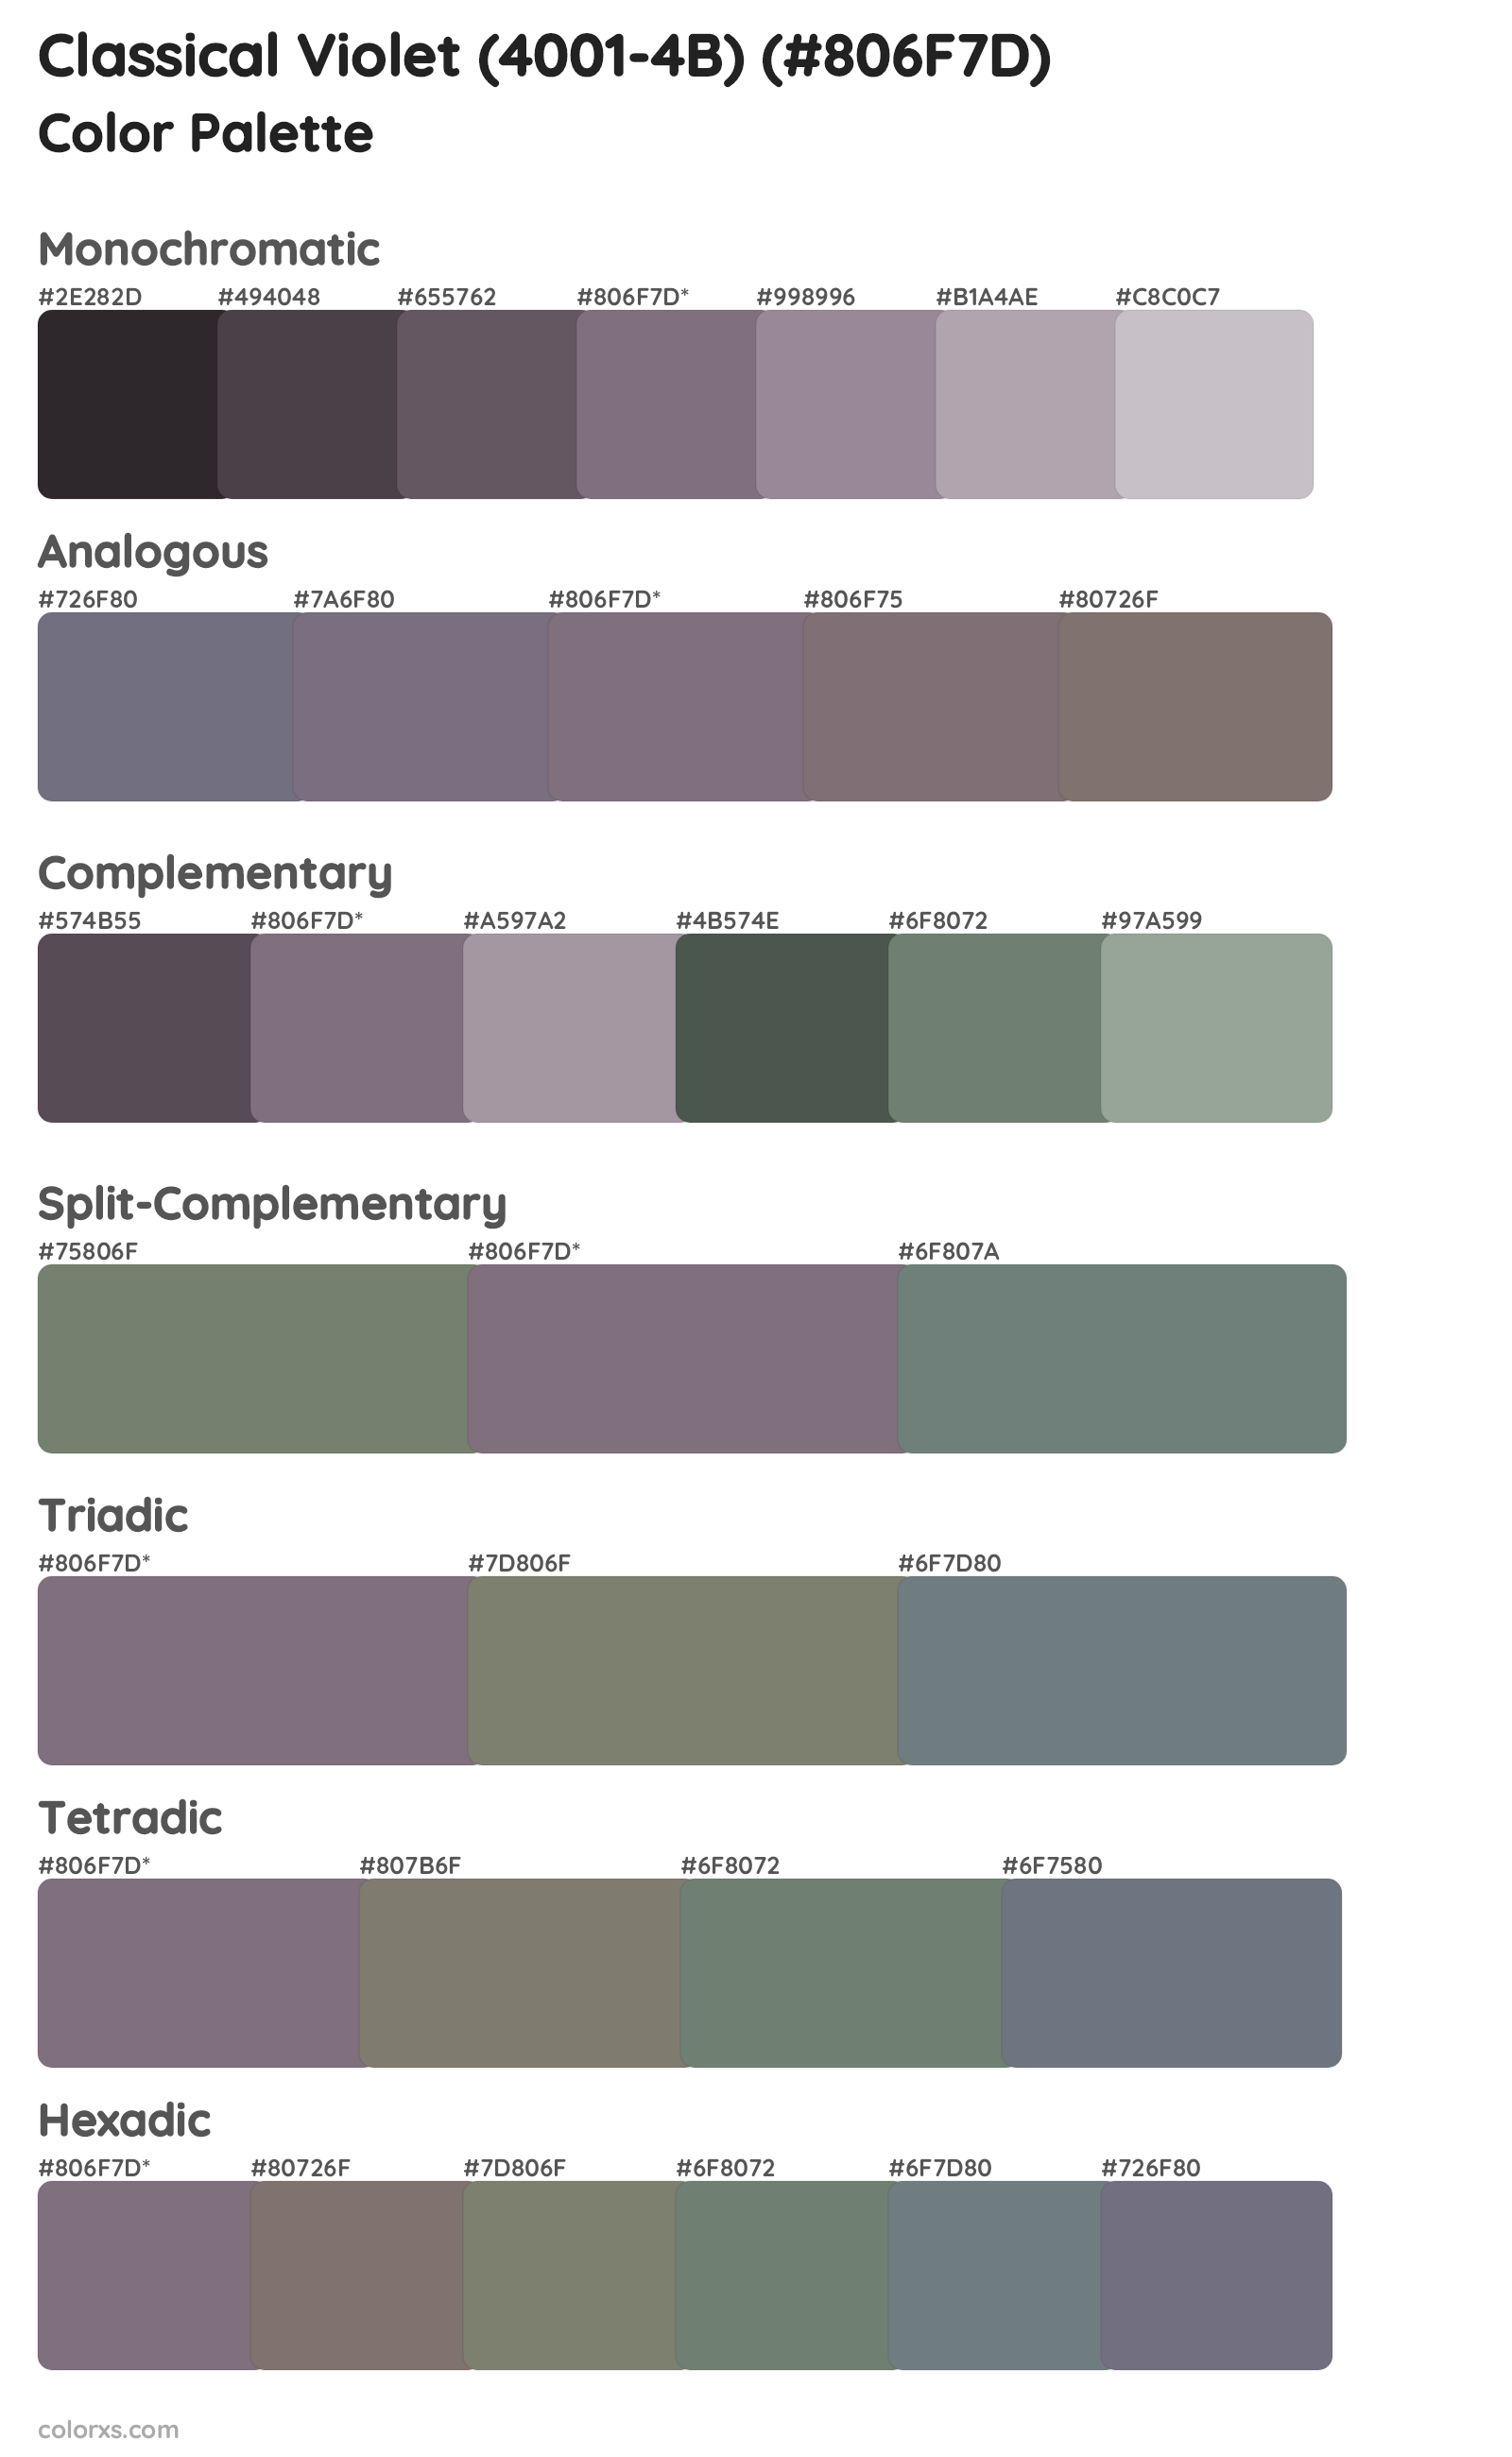 Classical Violet (4001-4B) Color Scheme Palettes